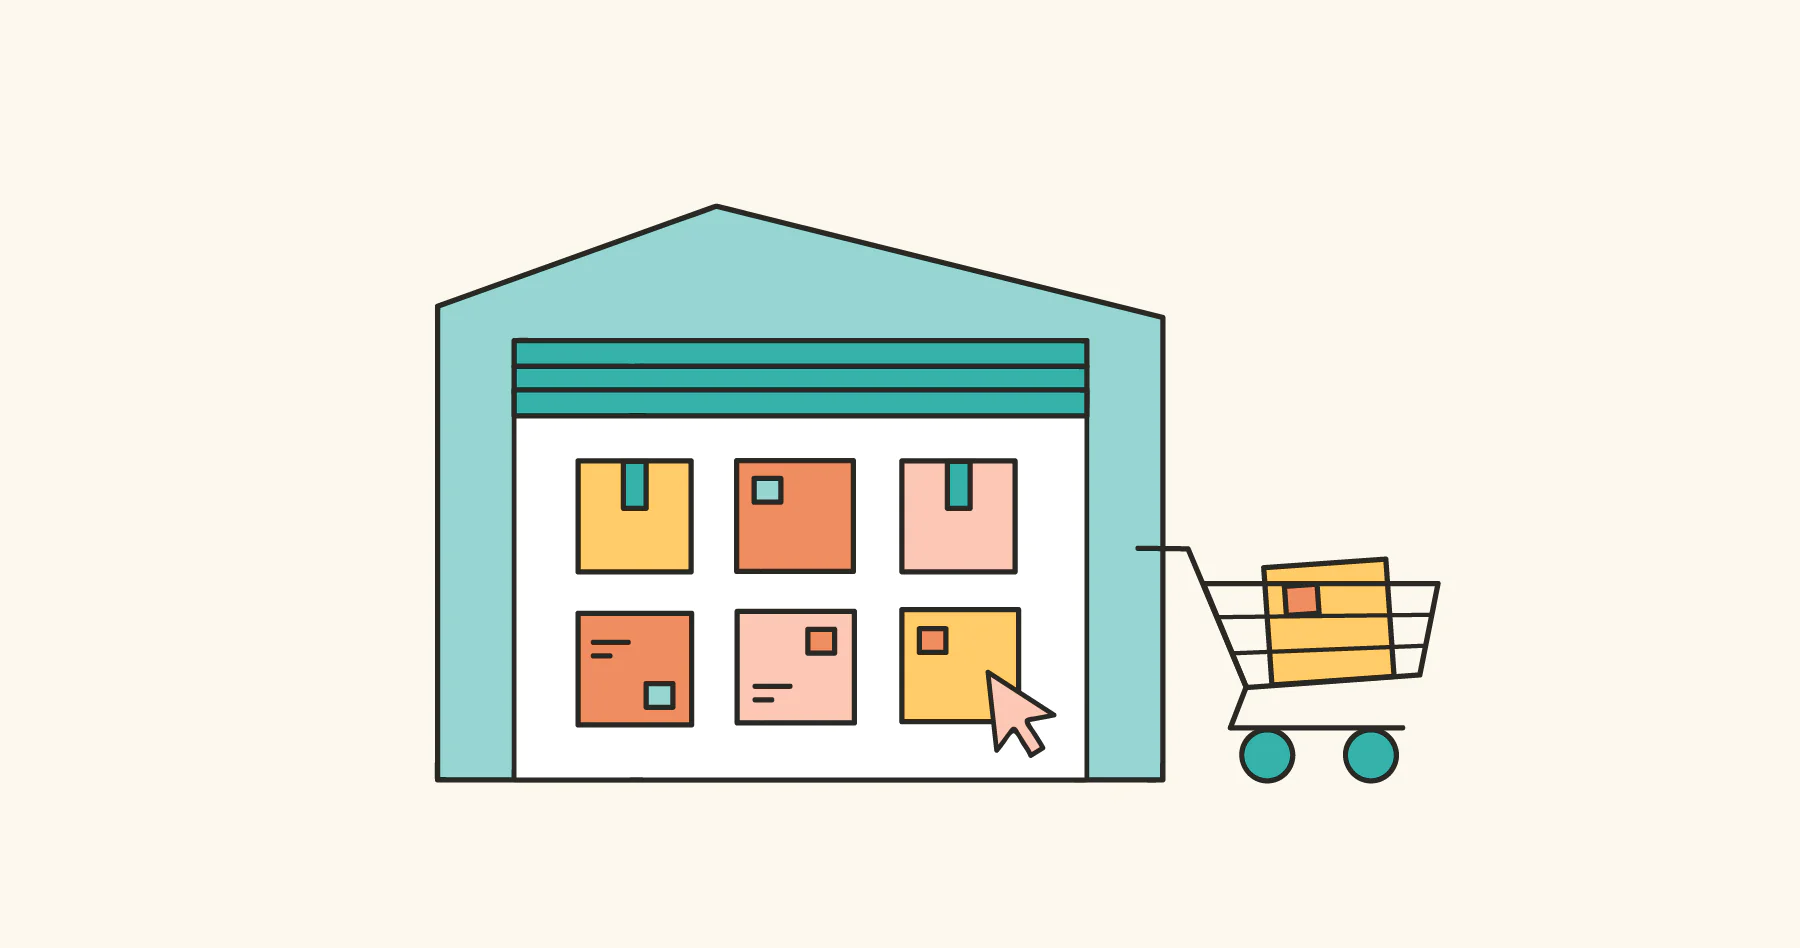 网络购物的图标，一个购物车停在一栋房子旁边，里面是货物箱子，上面有鼠标箭头